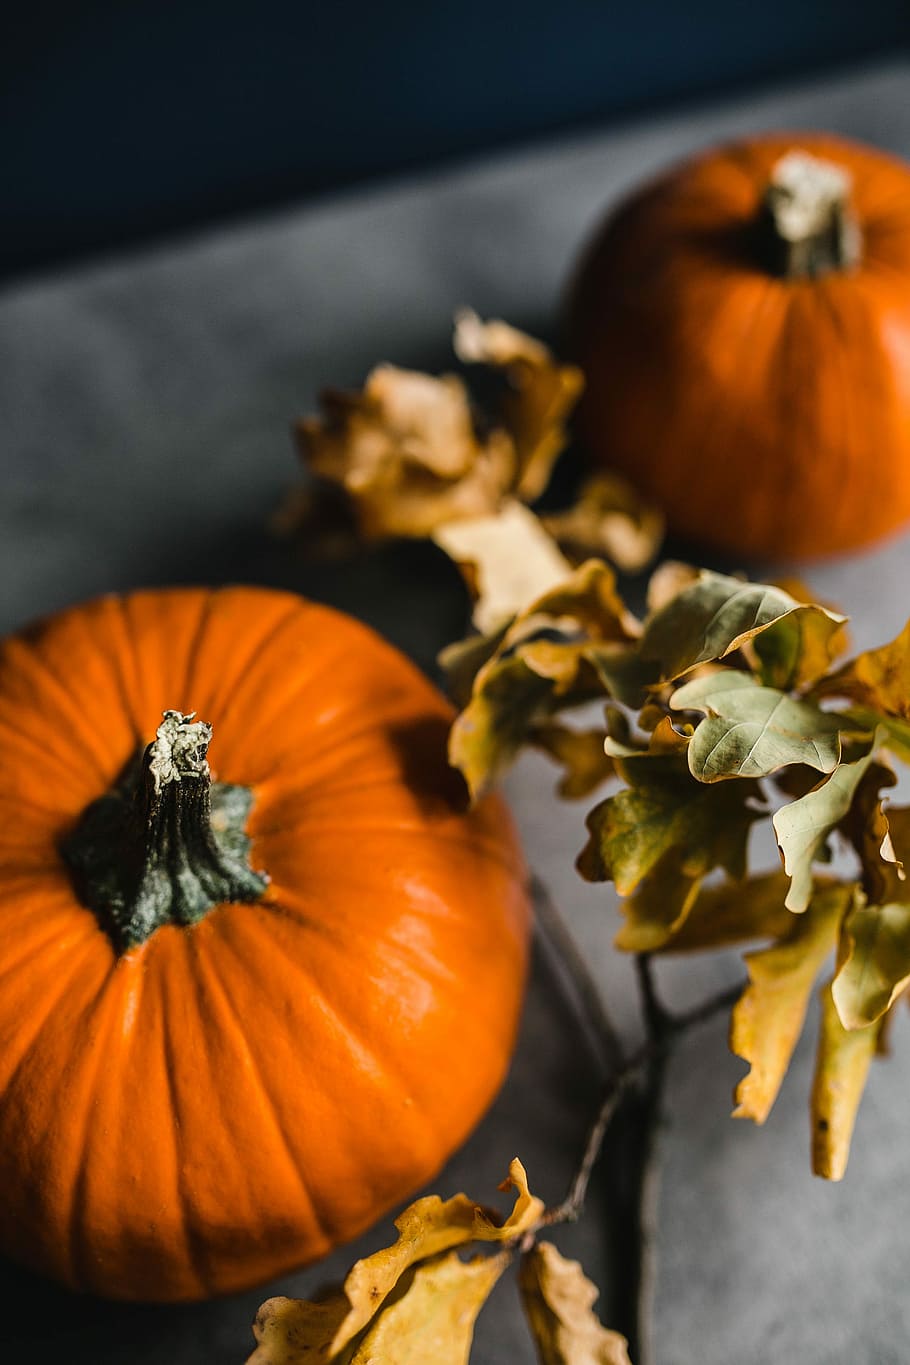 calabaza de otoño, Otoño, Calabaza, halloween, acción de gracias, color naranja, temporada, vegetal, decoración, octubre